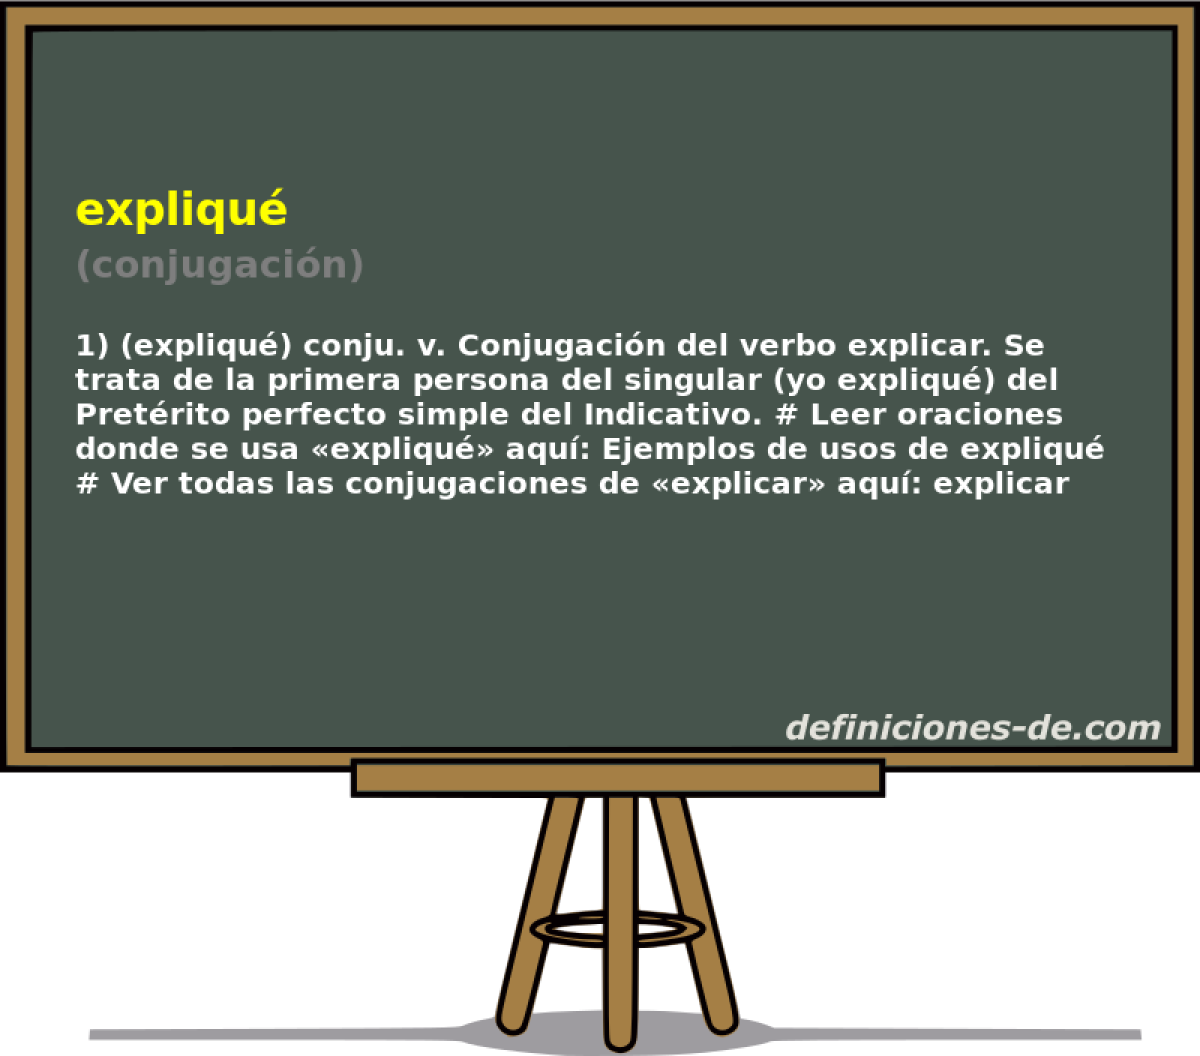 expliqu (conjugacin)